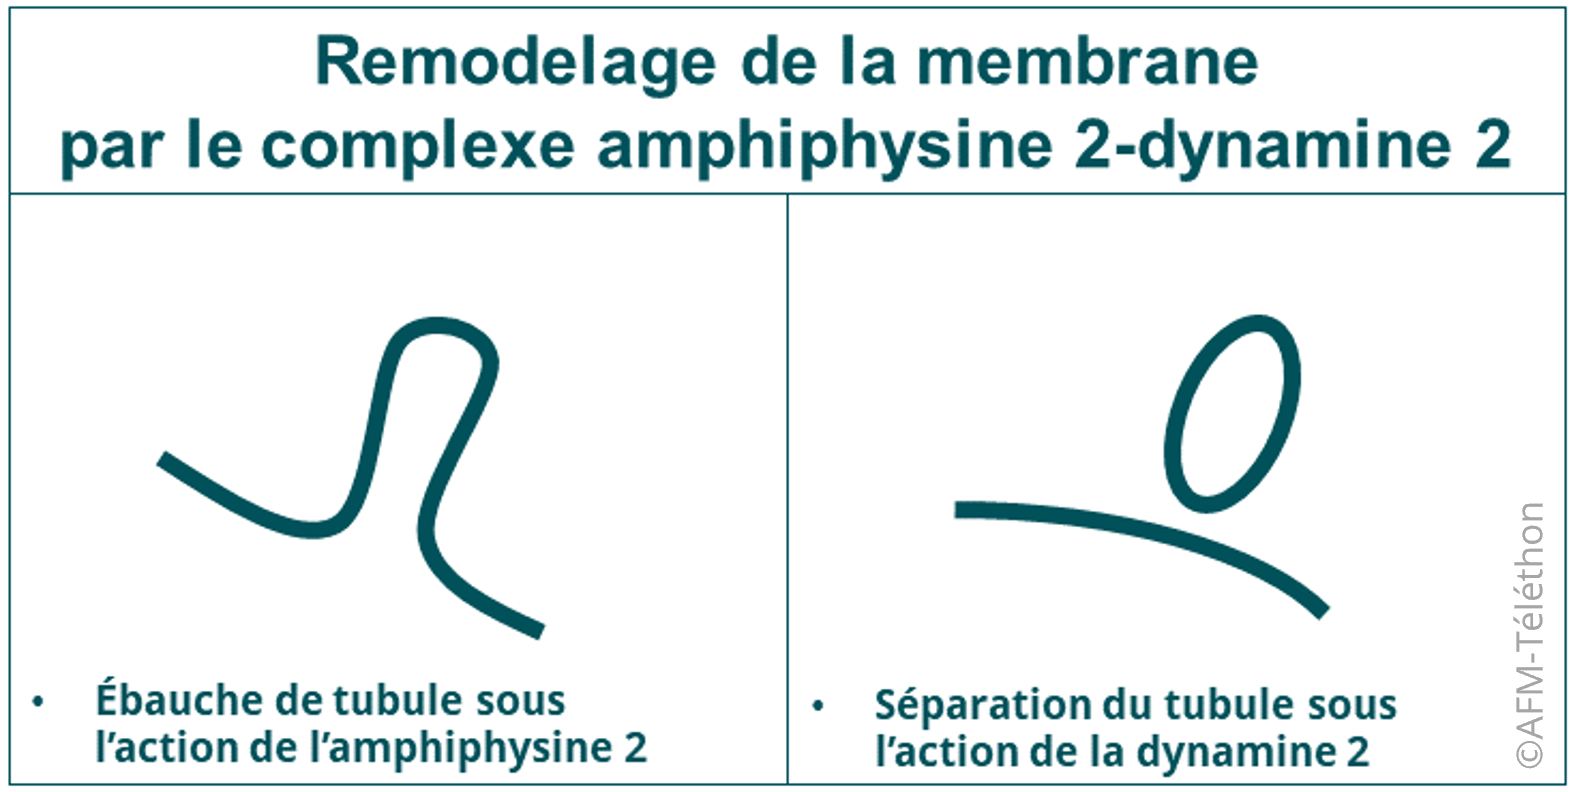 Infographie Romodelage de la membrane par le complexe amphiphysine 2 - dynamin 2